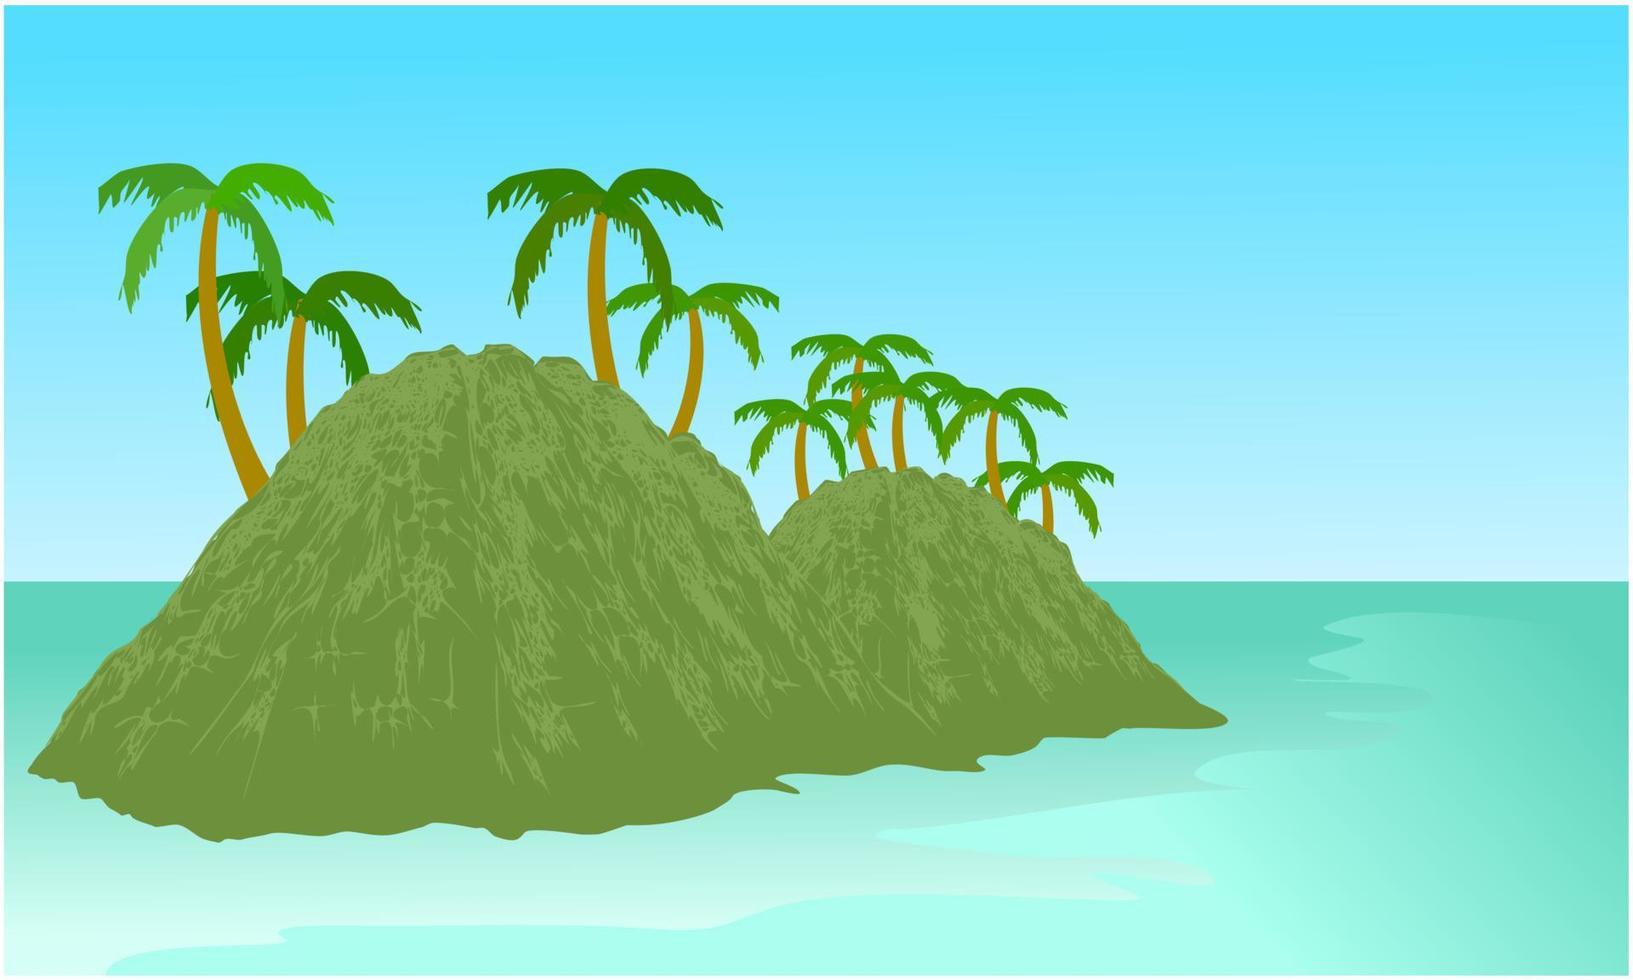 eiland aan de zee met palmboom en heldere blauwe hemelachtergrond. behang of banner vector